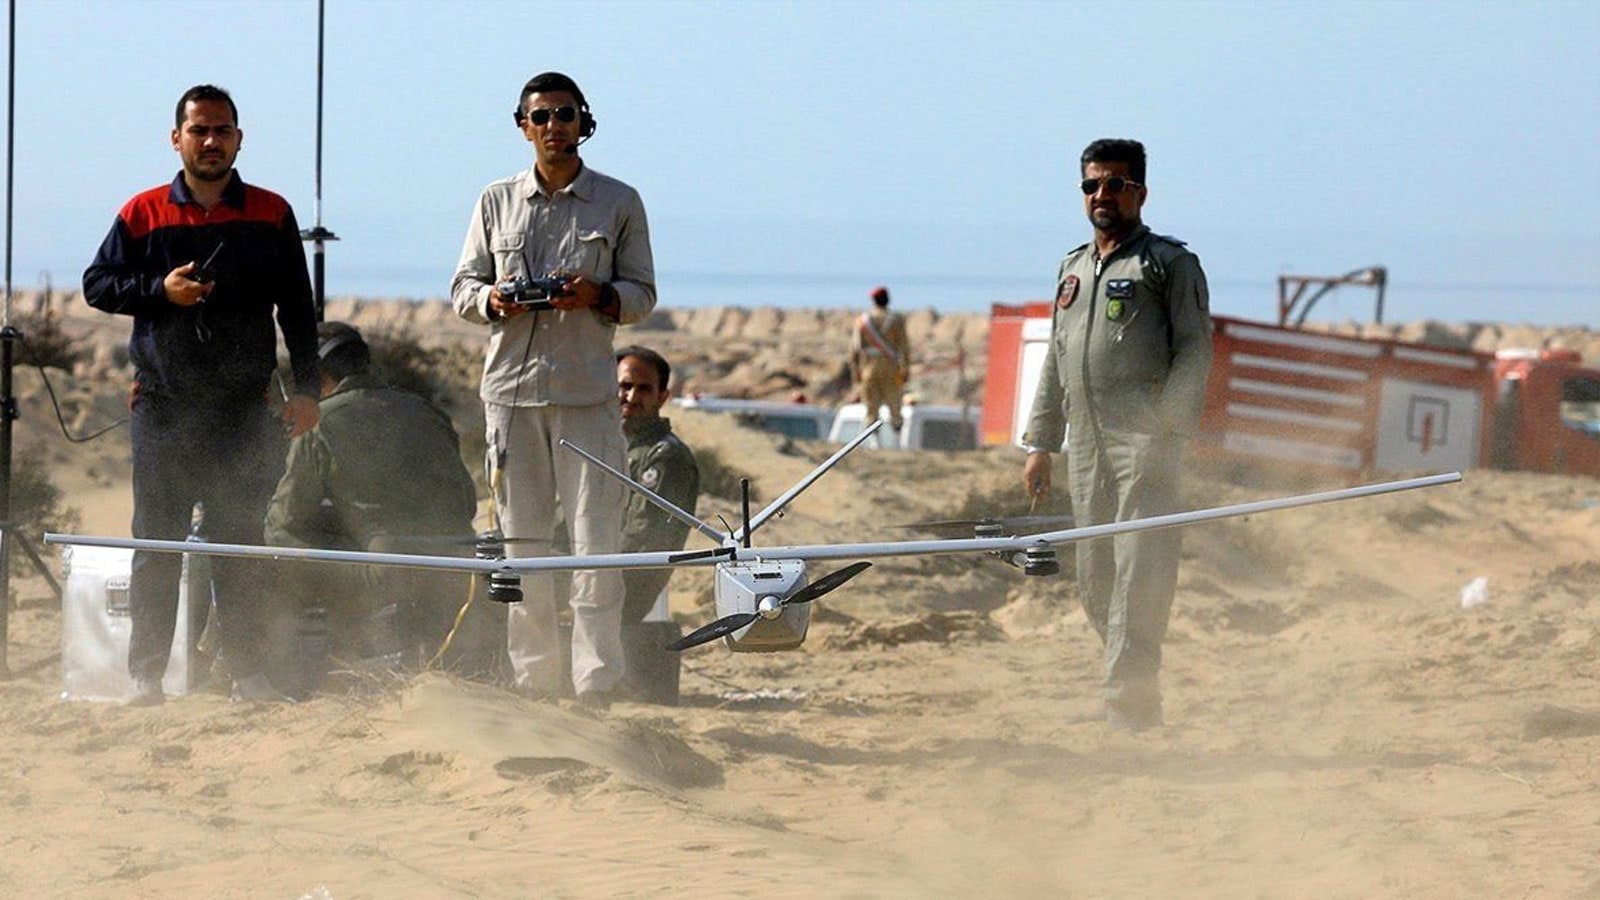 “الدرونز” سلاح إيران للتنكر ويسعى لتغيير التوازن الإستراتيجي بالمنطقة